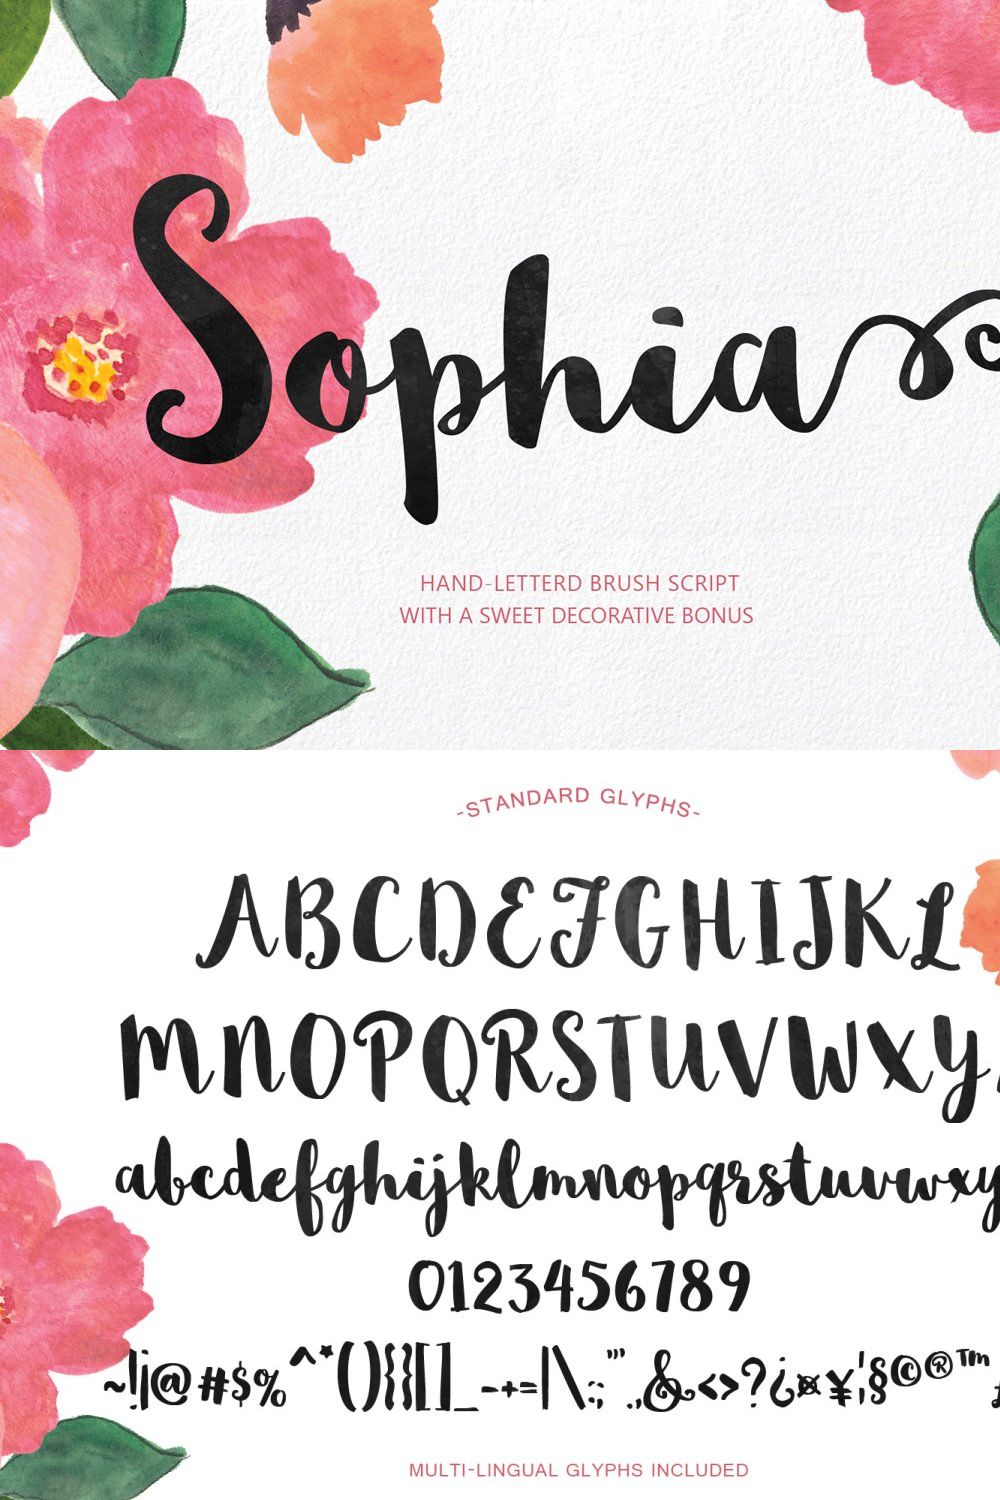 Sophia Hand-lettered pinterest preview image.